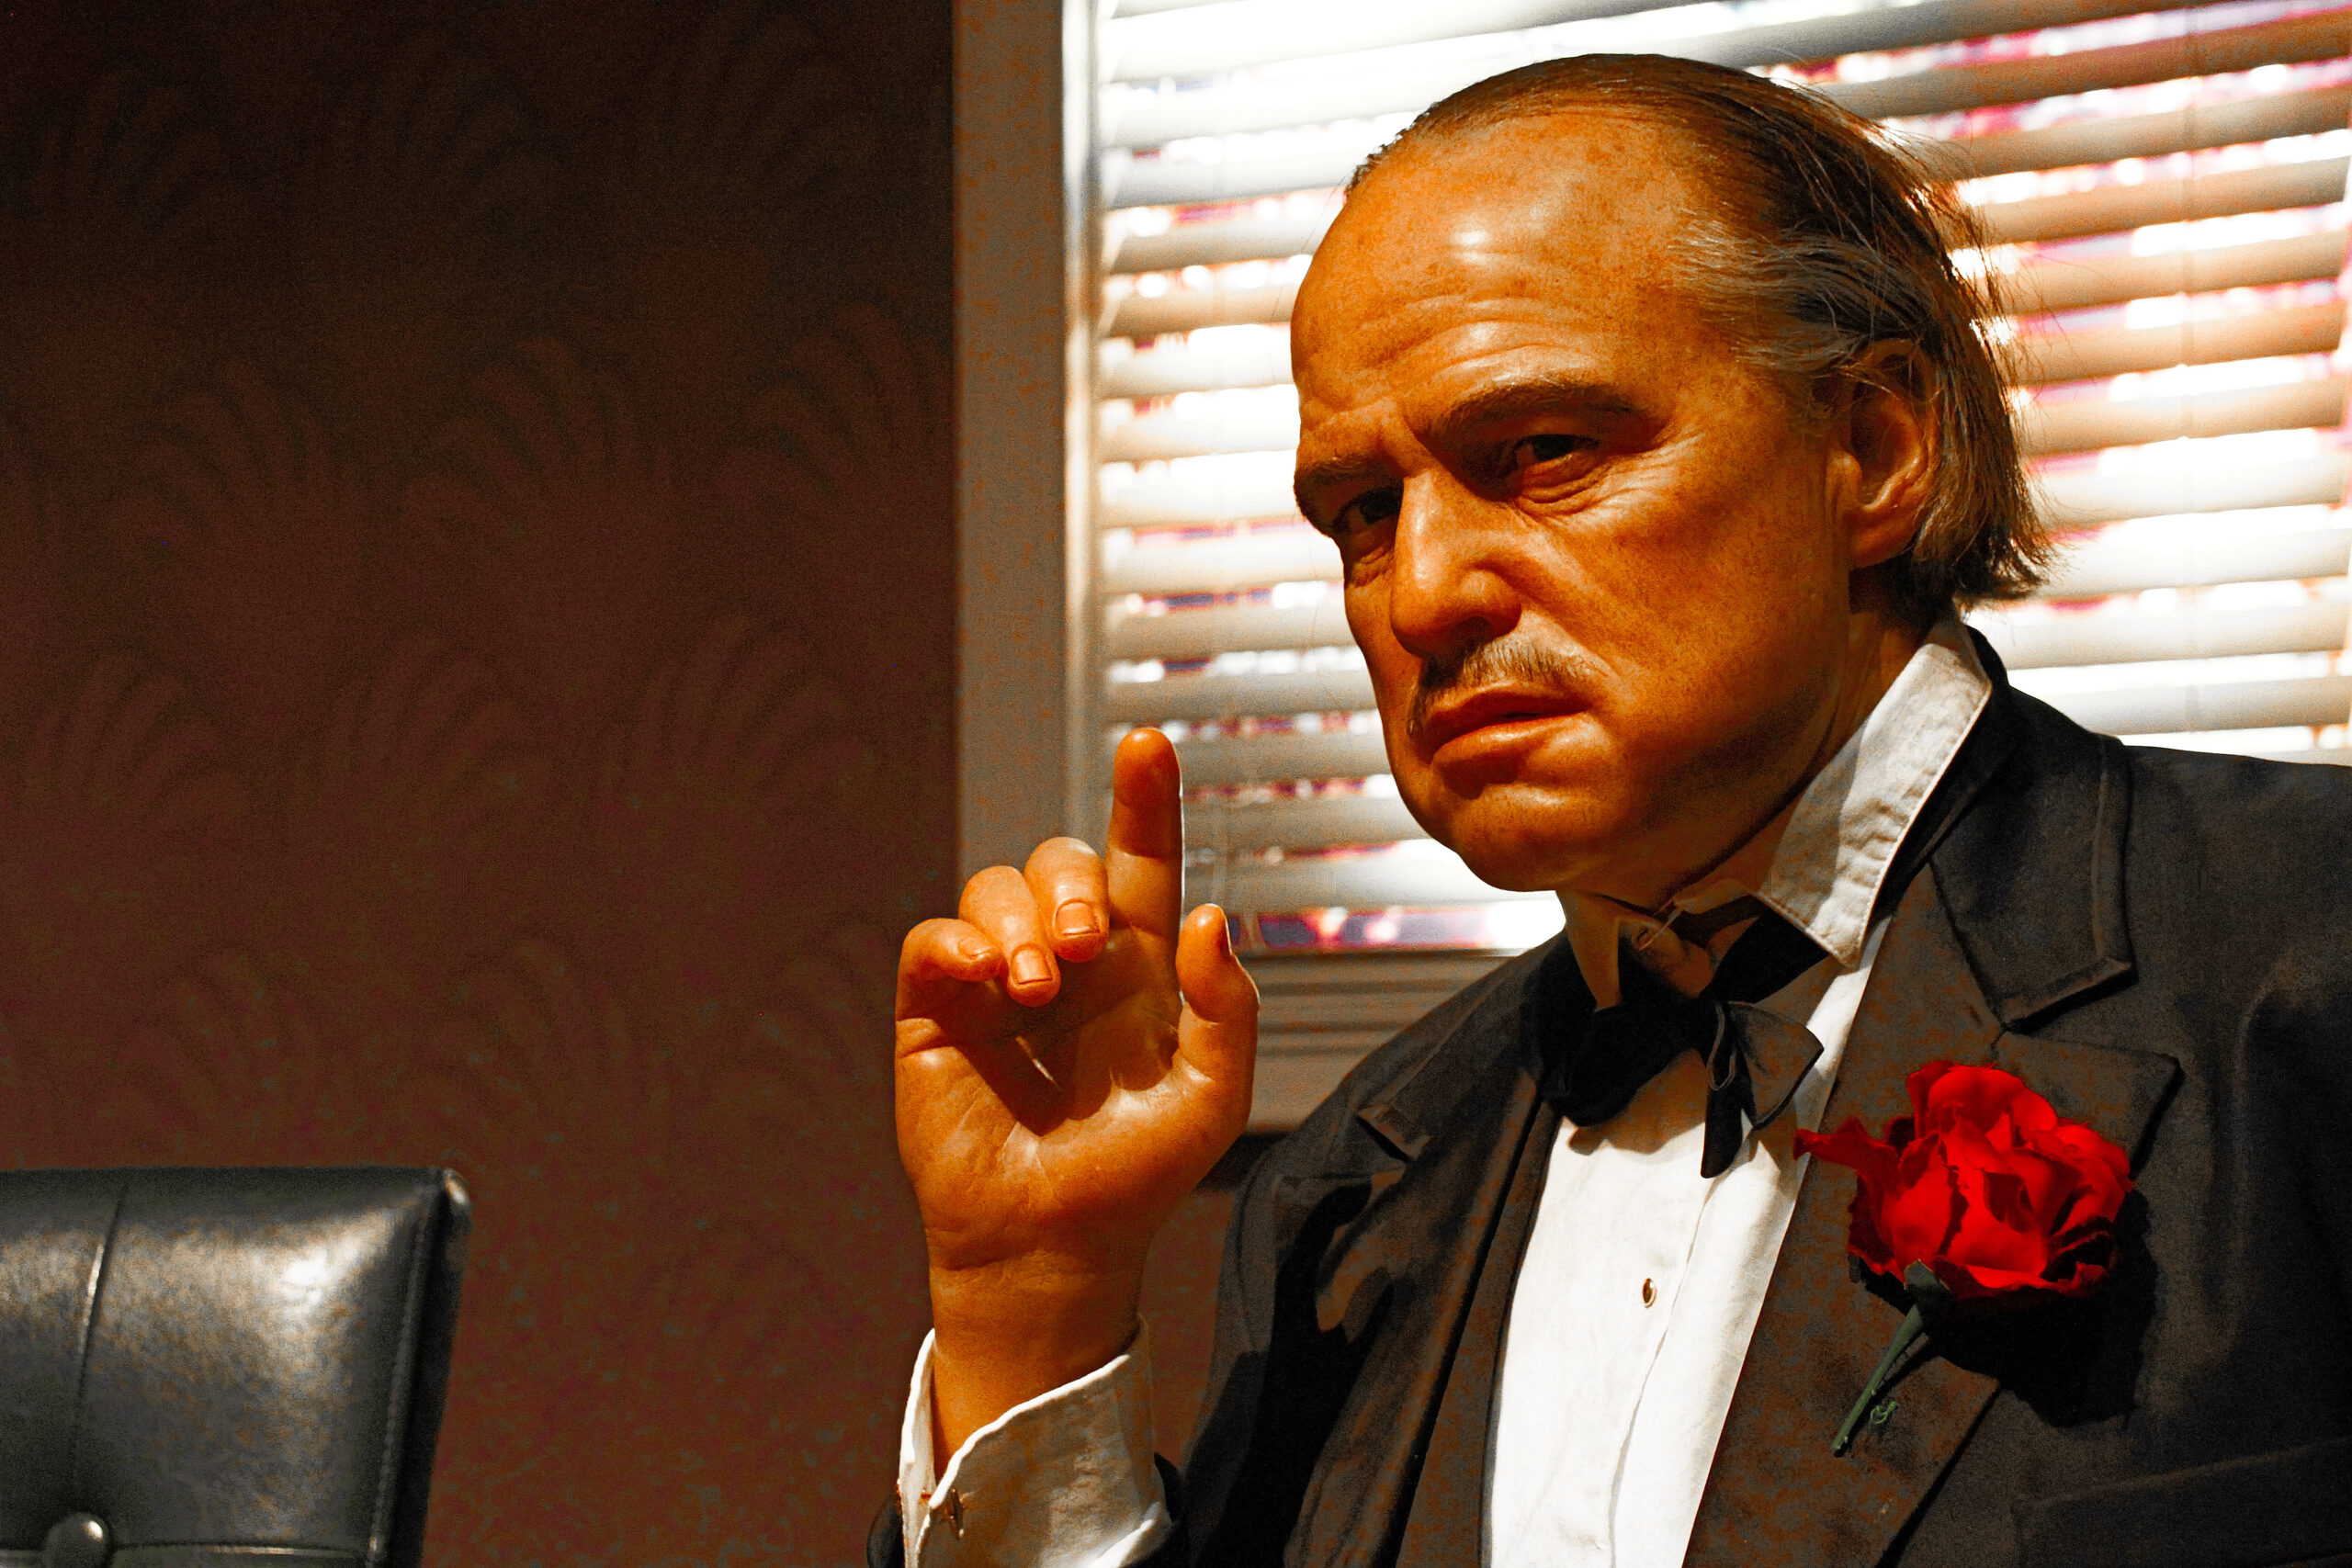 Photo of Marlon Brando as Vito Corleone from the Godfather Movie - Pop Culture Allusions